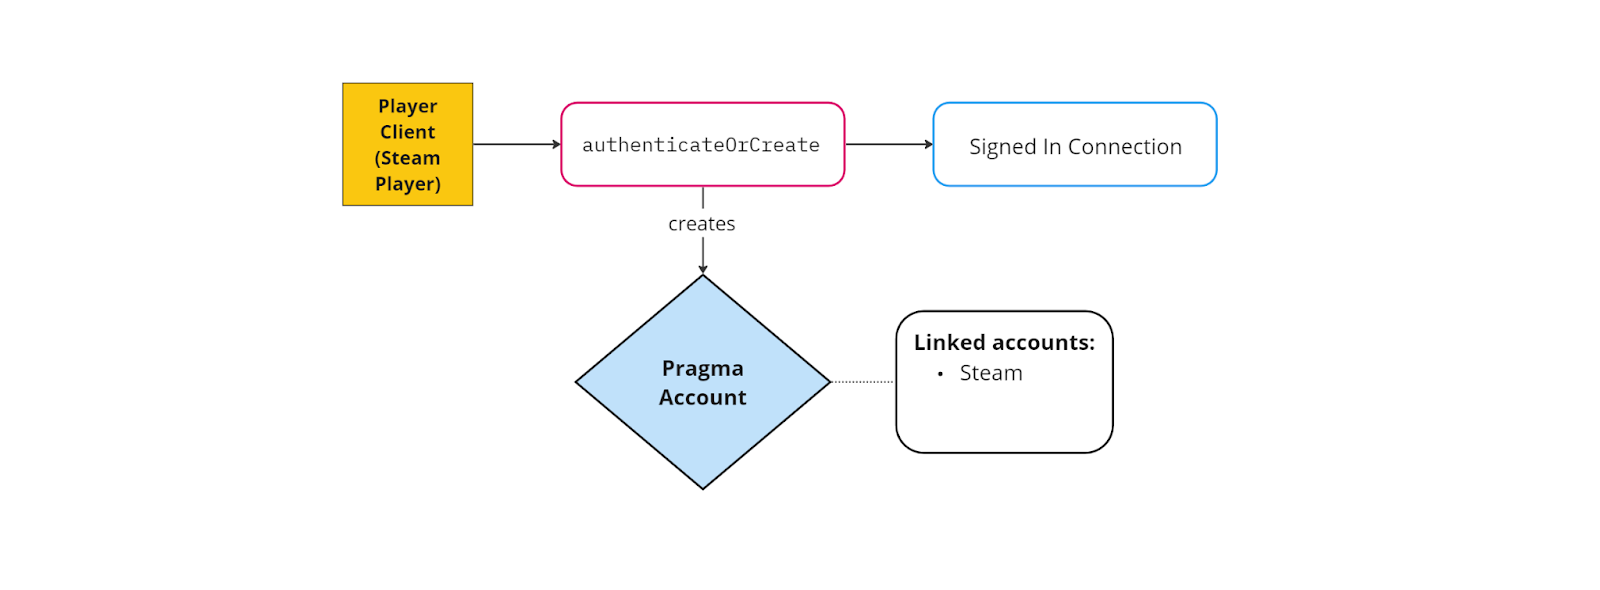 Create a Pragma Account